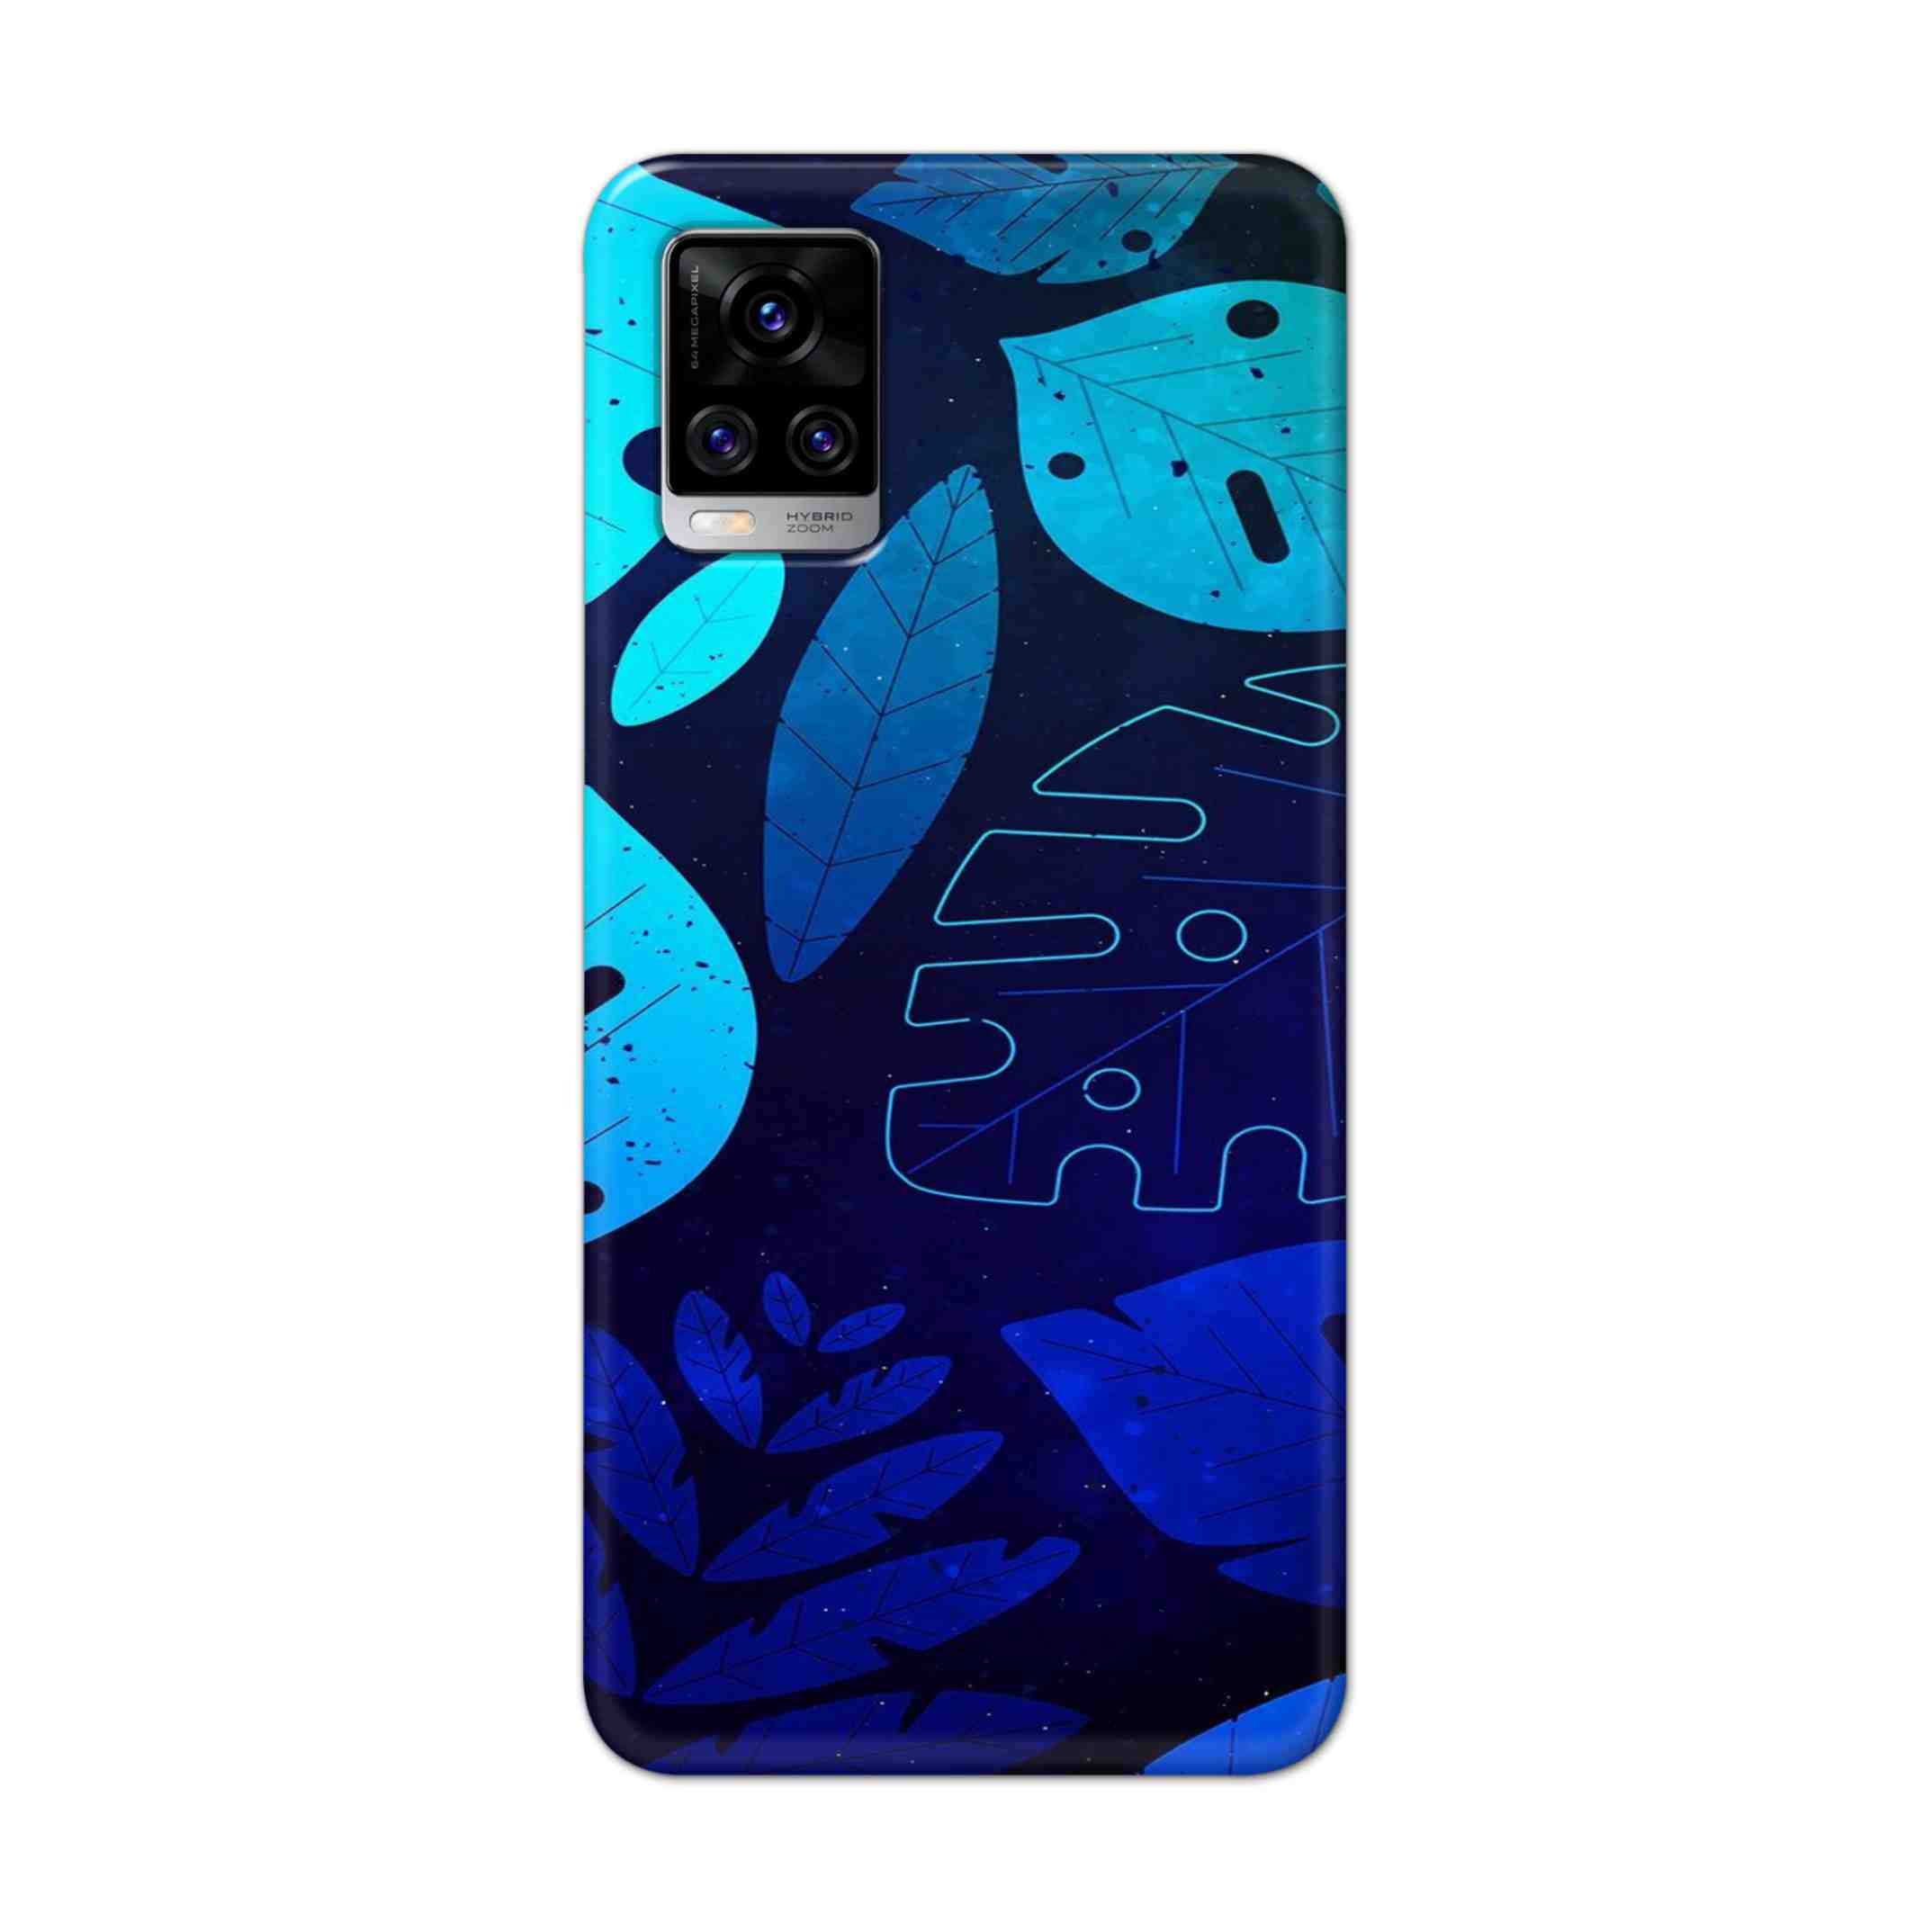 Buy Neon Leaf Hard Back Mobile Phone Case Cover For Vivo V20 Pro Online